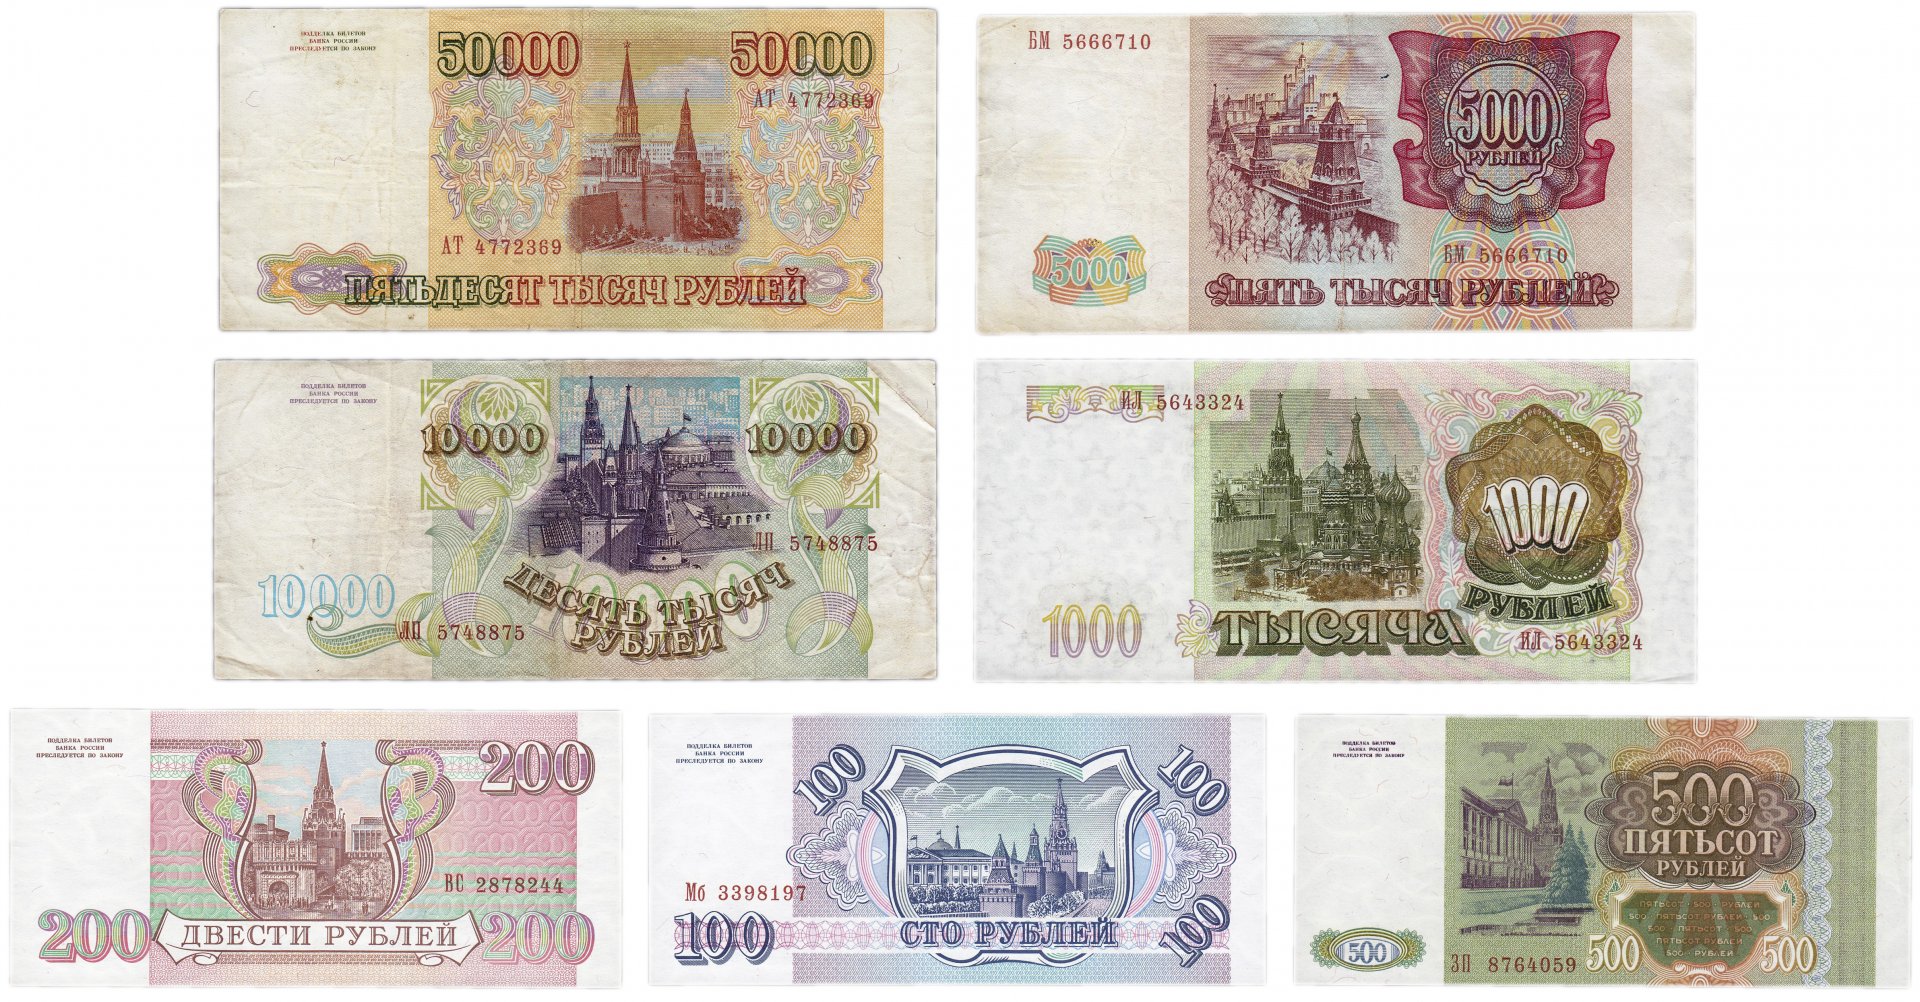 100 500 1000 Рублей. Купюры до девальвации.